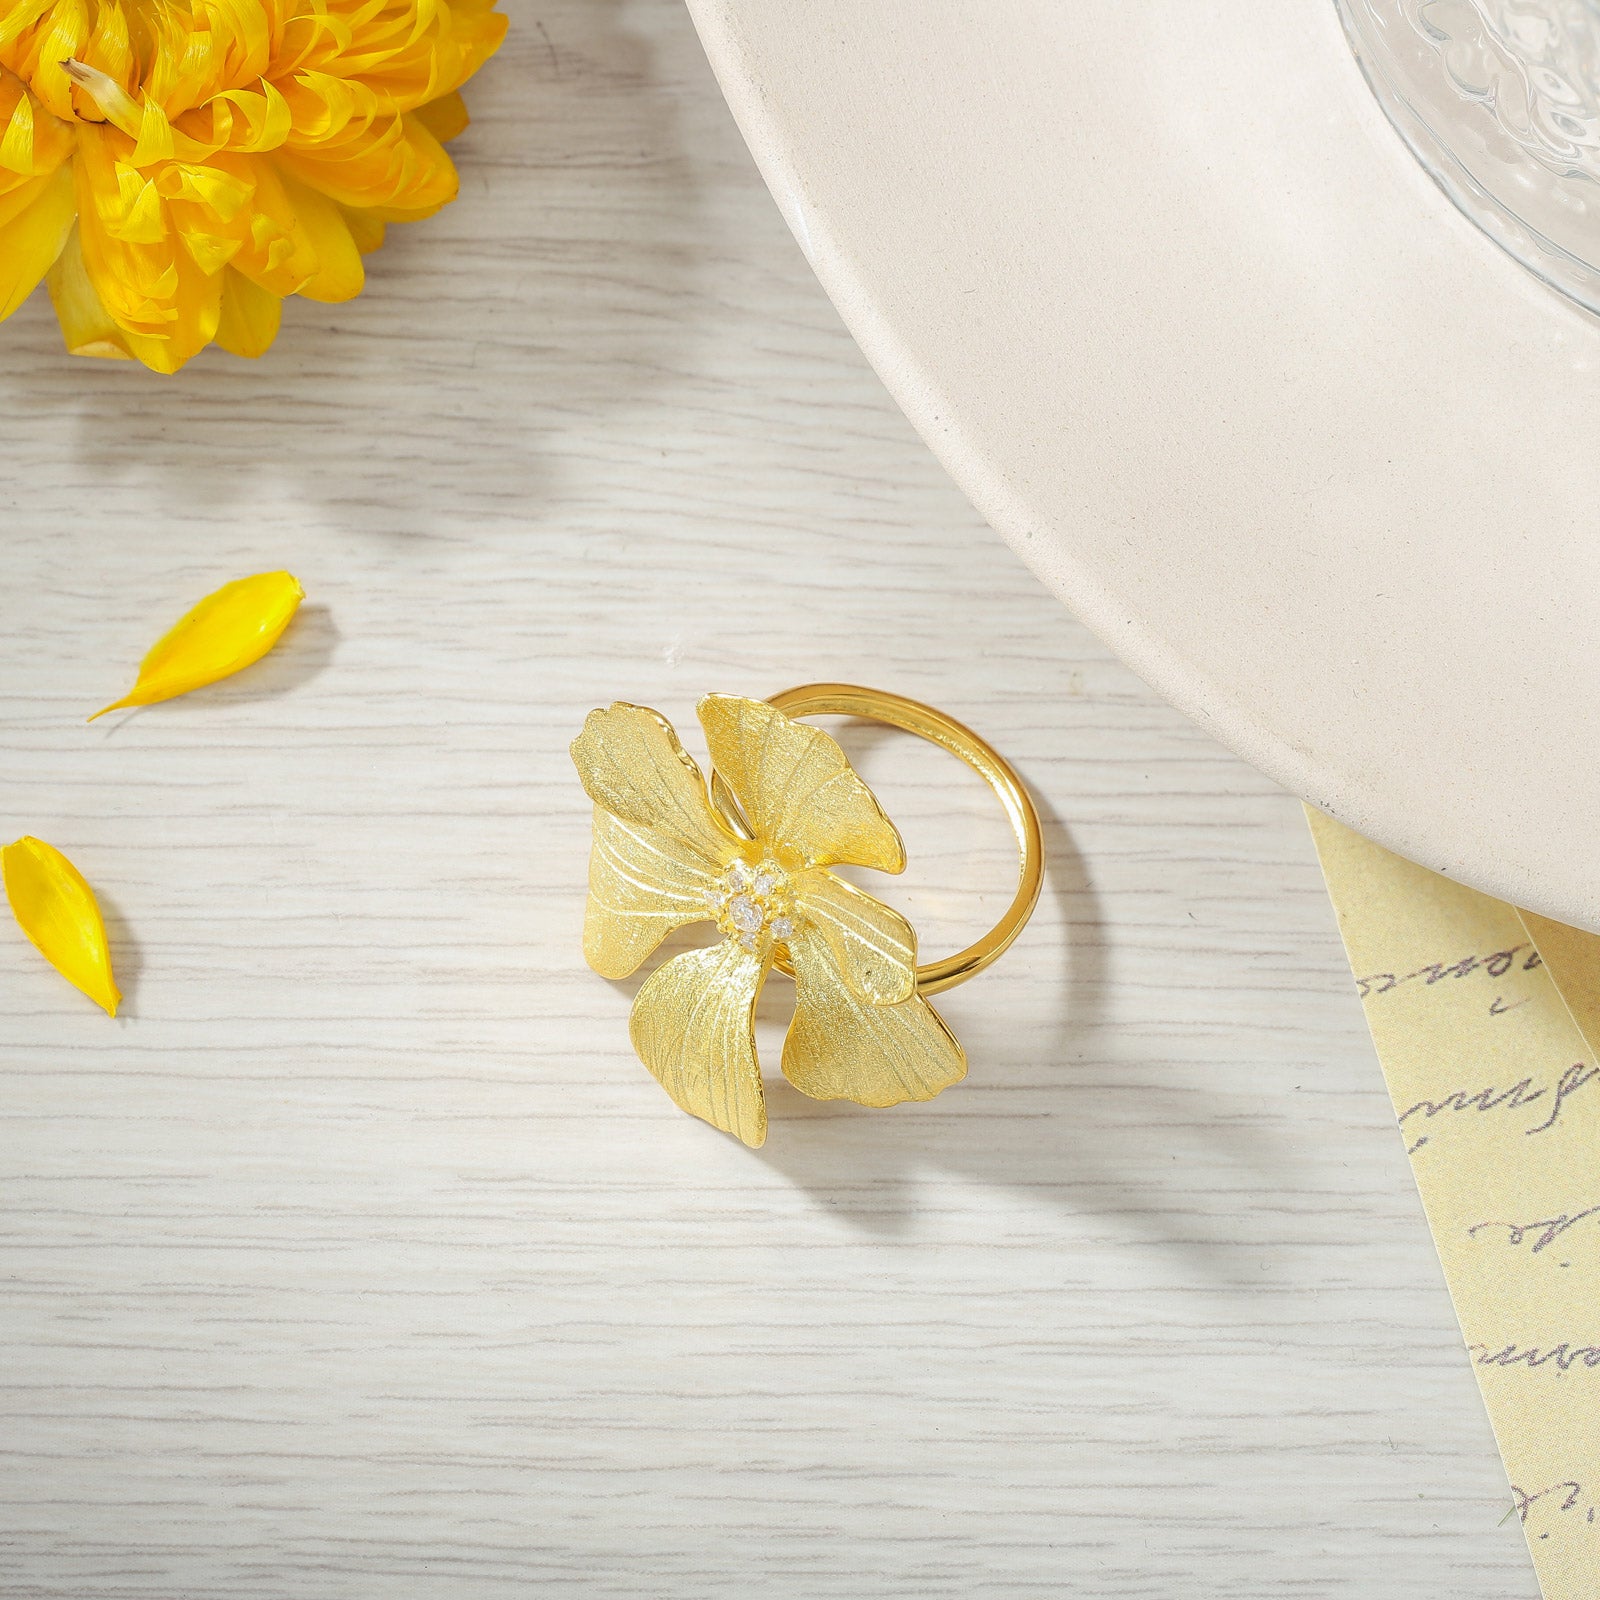 Selenichast Golden Peony Flower Engagement Ring